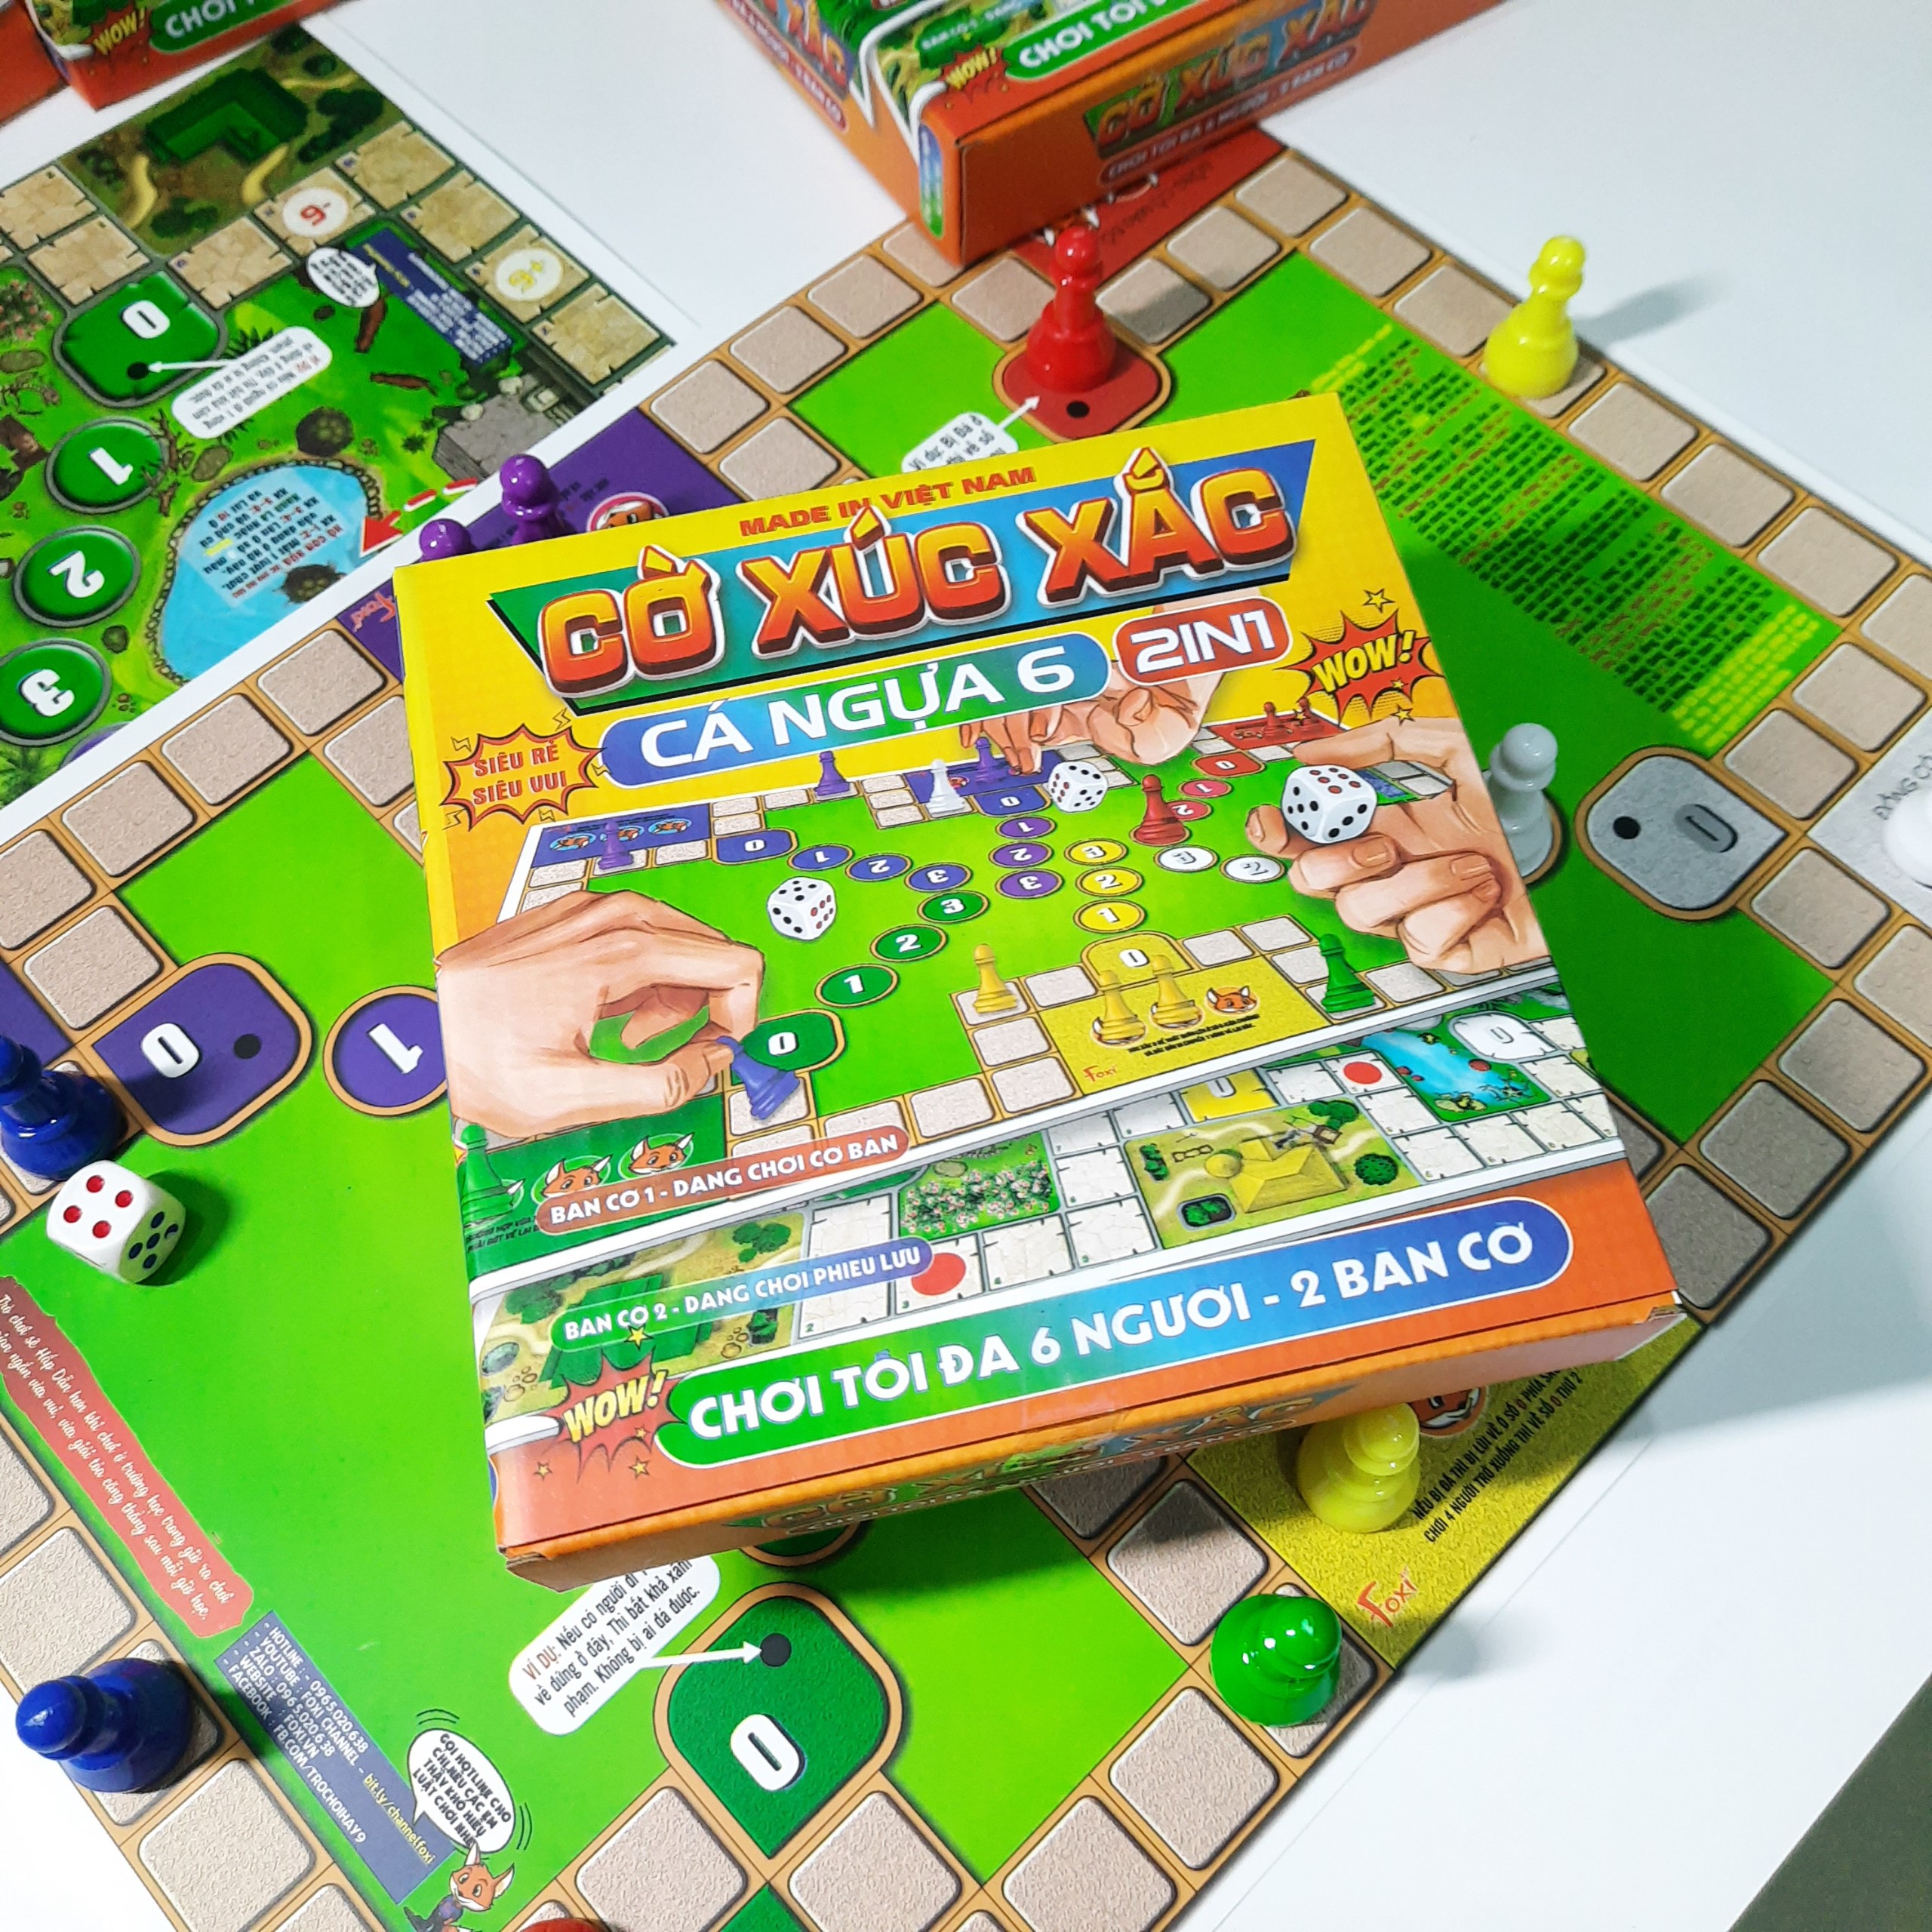 Board game-Cờ xúc xắc cá ngựa 6 người chơi Foxi-đồ chơi phát triển tư duy-dễ chơi-vui nhộn-giá siêu rẻ